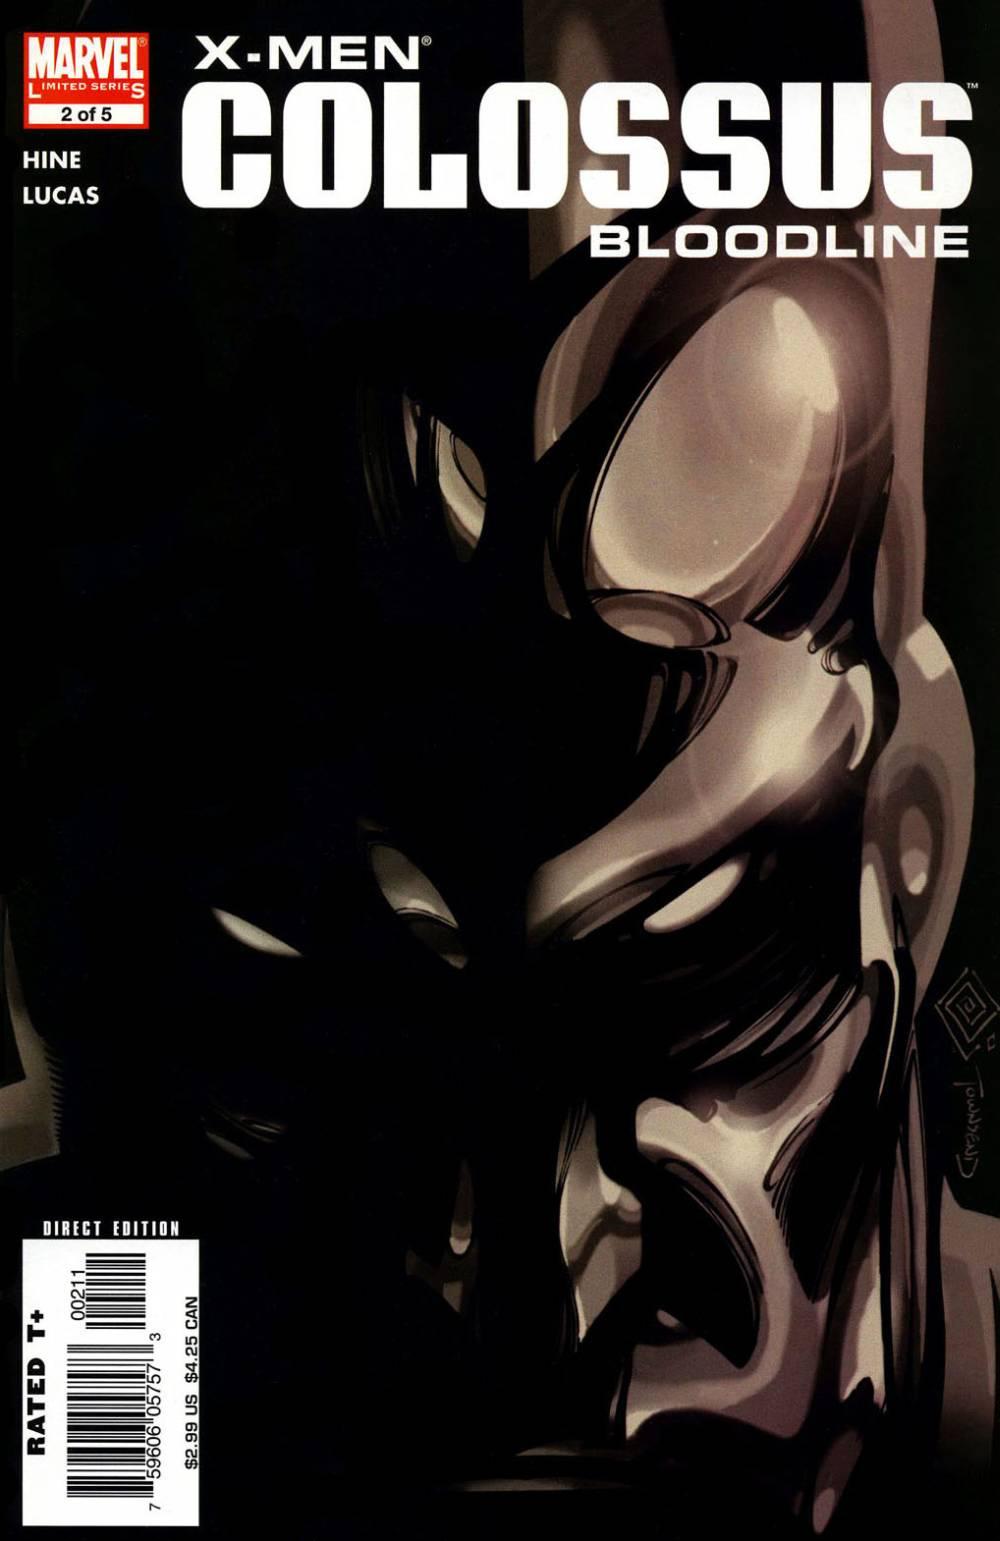 X-Men: Colossus Bloodline Vol. 1 #2